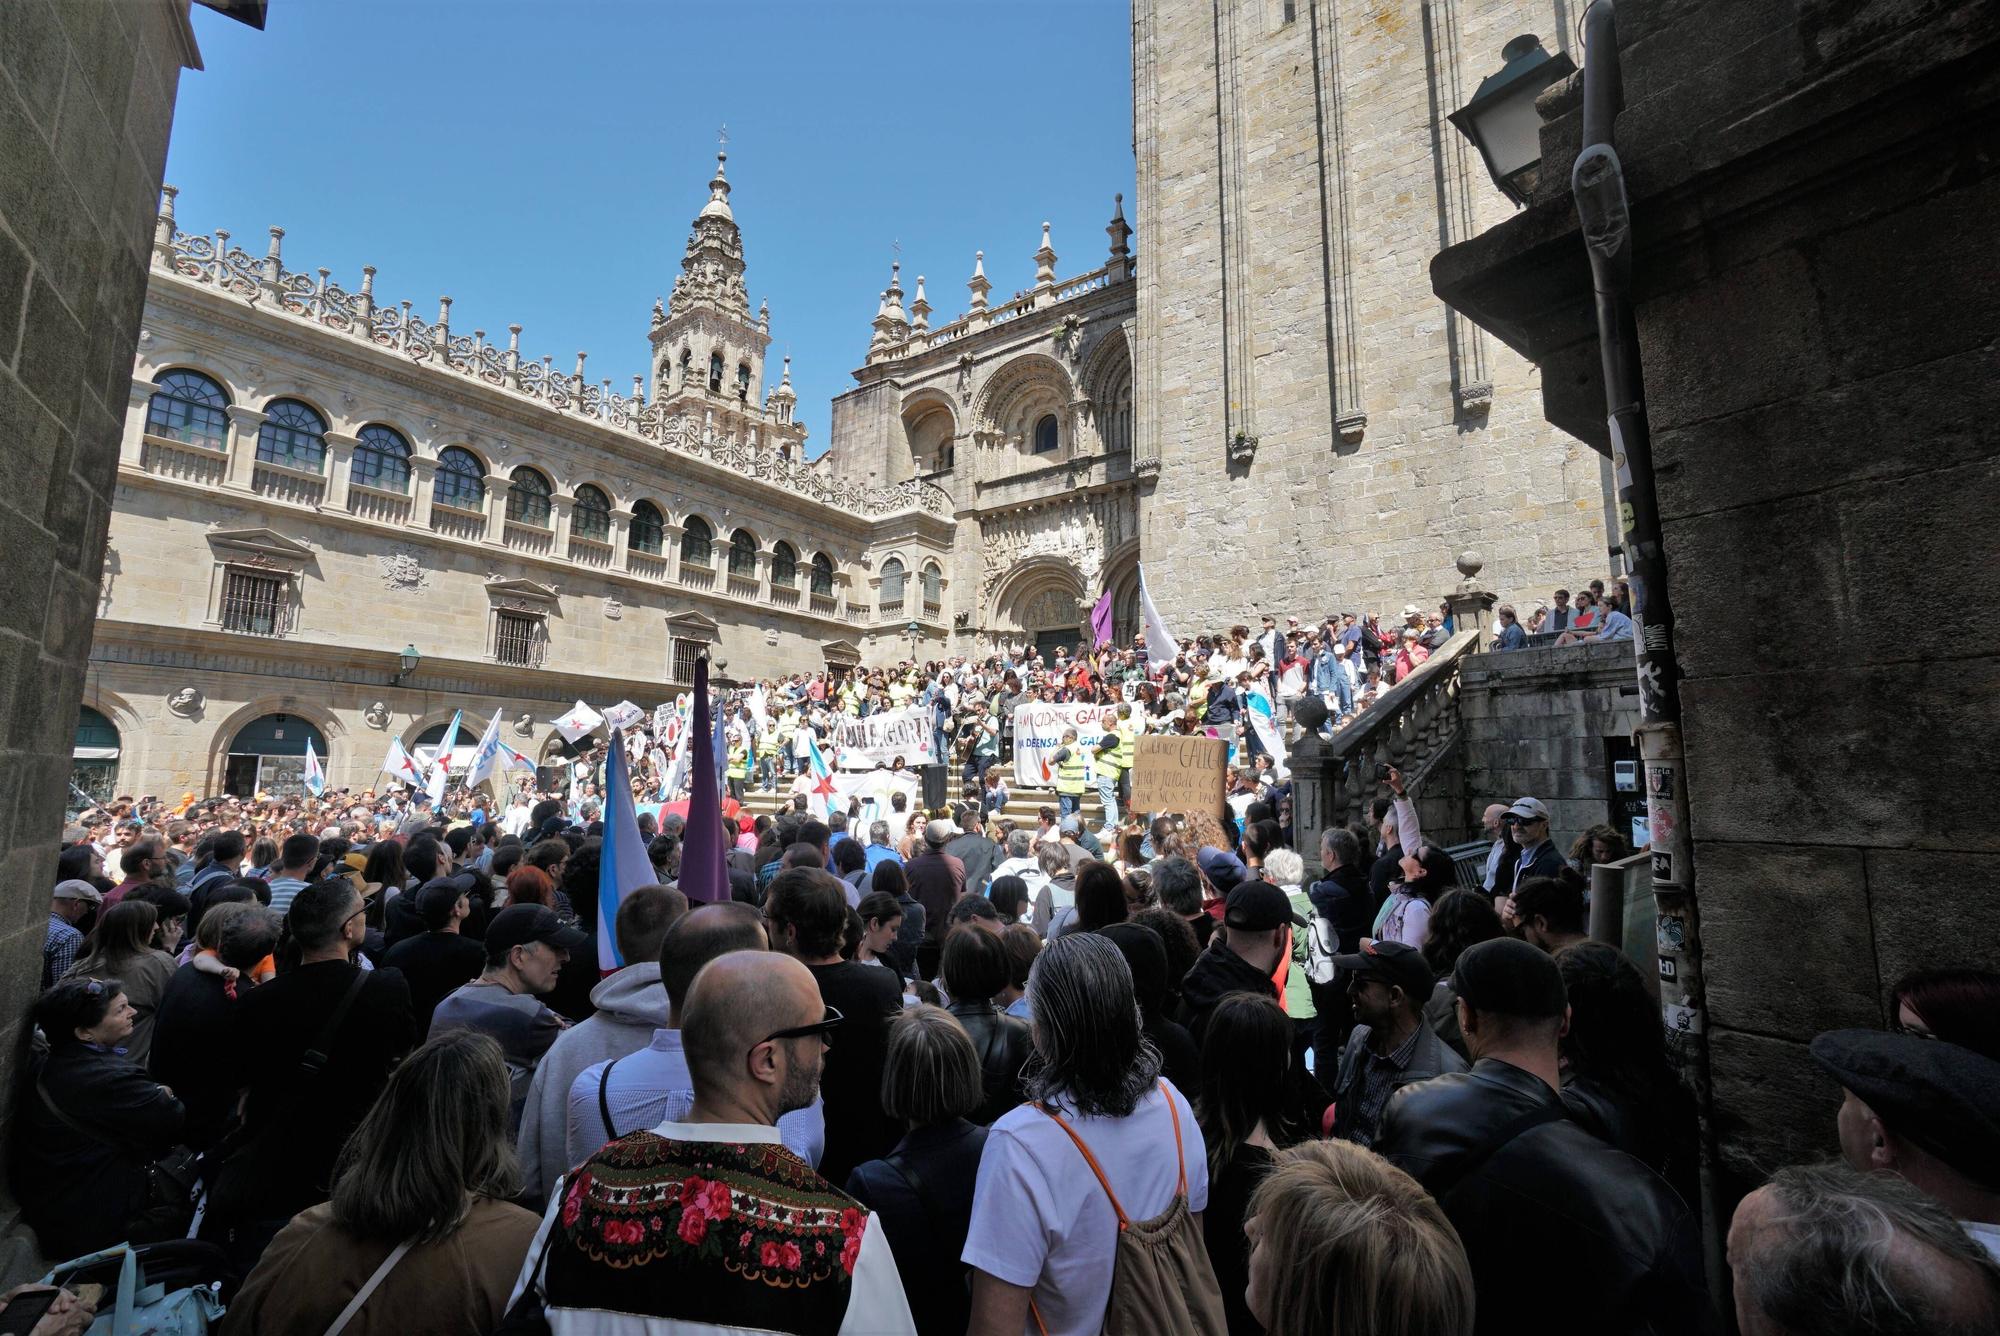 Manifestación de Queremos Galego en Santiago polo Día das Letras